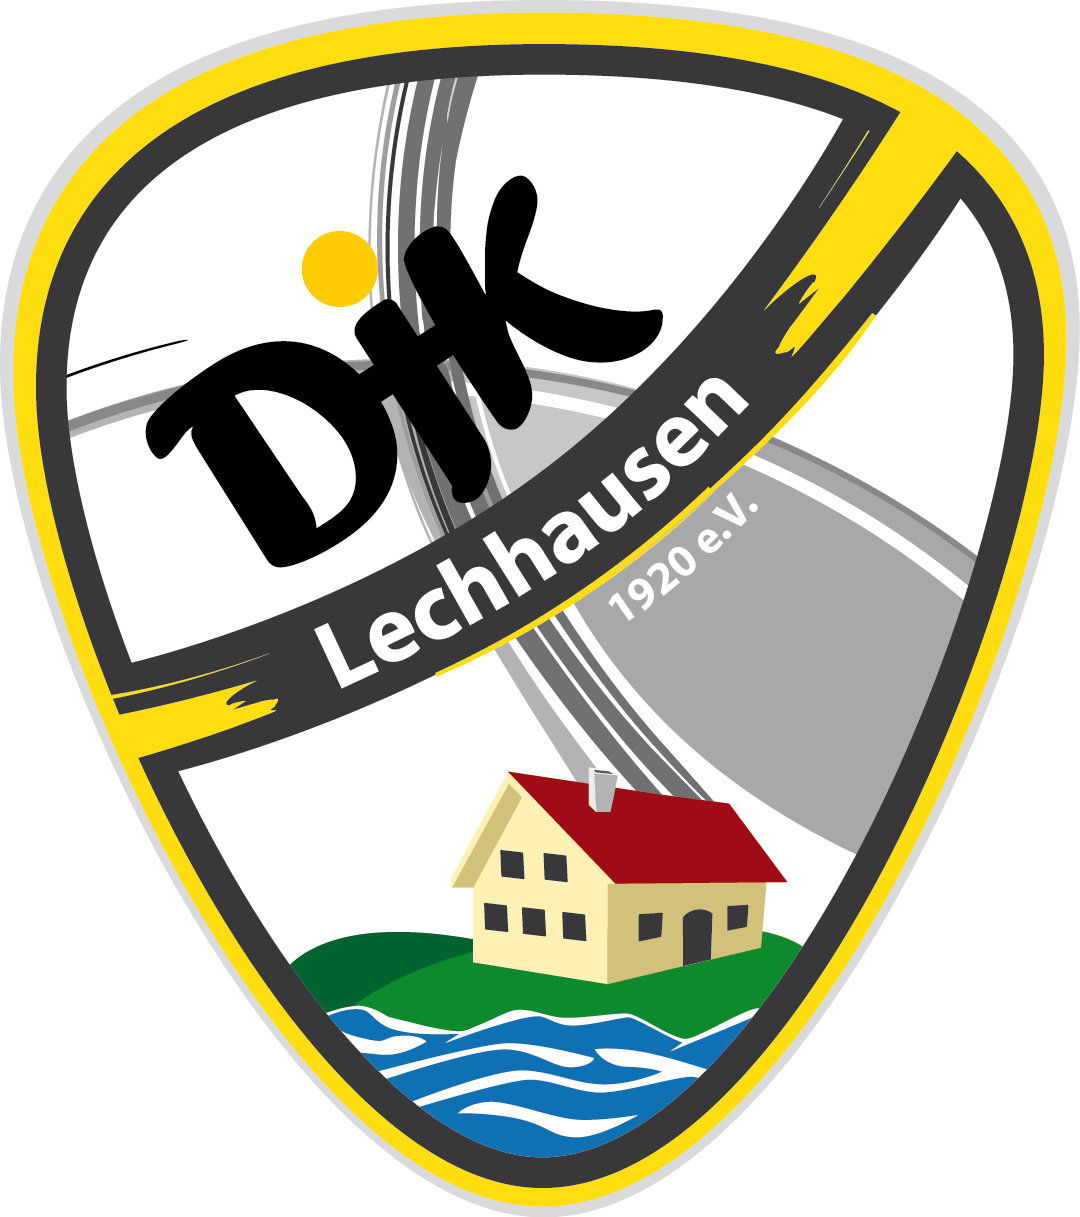 Wappen der DJK Augsburg-Lechhausen 1920 e.V.